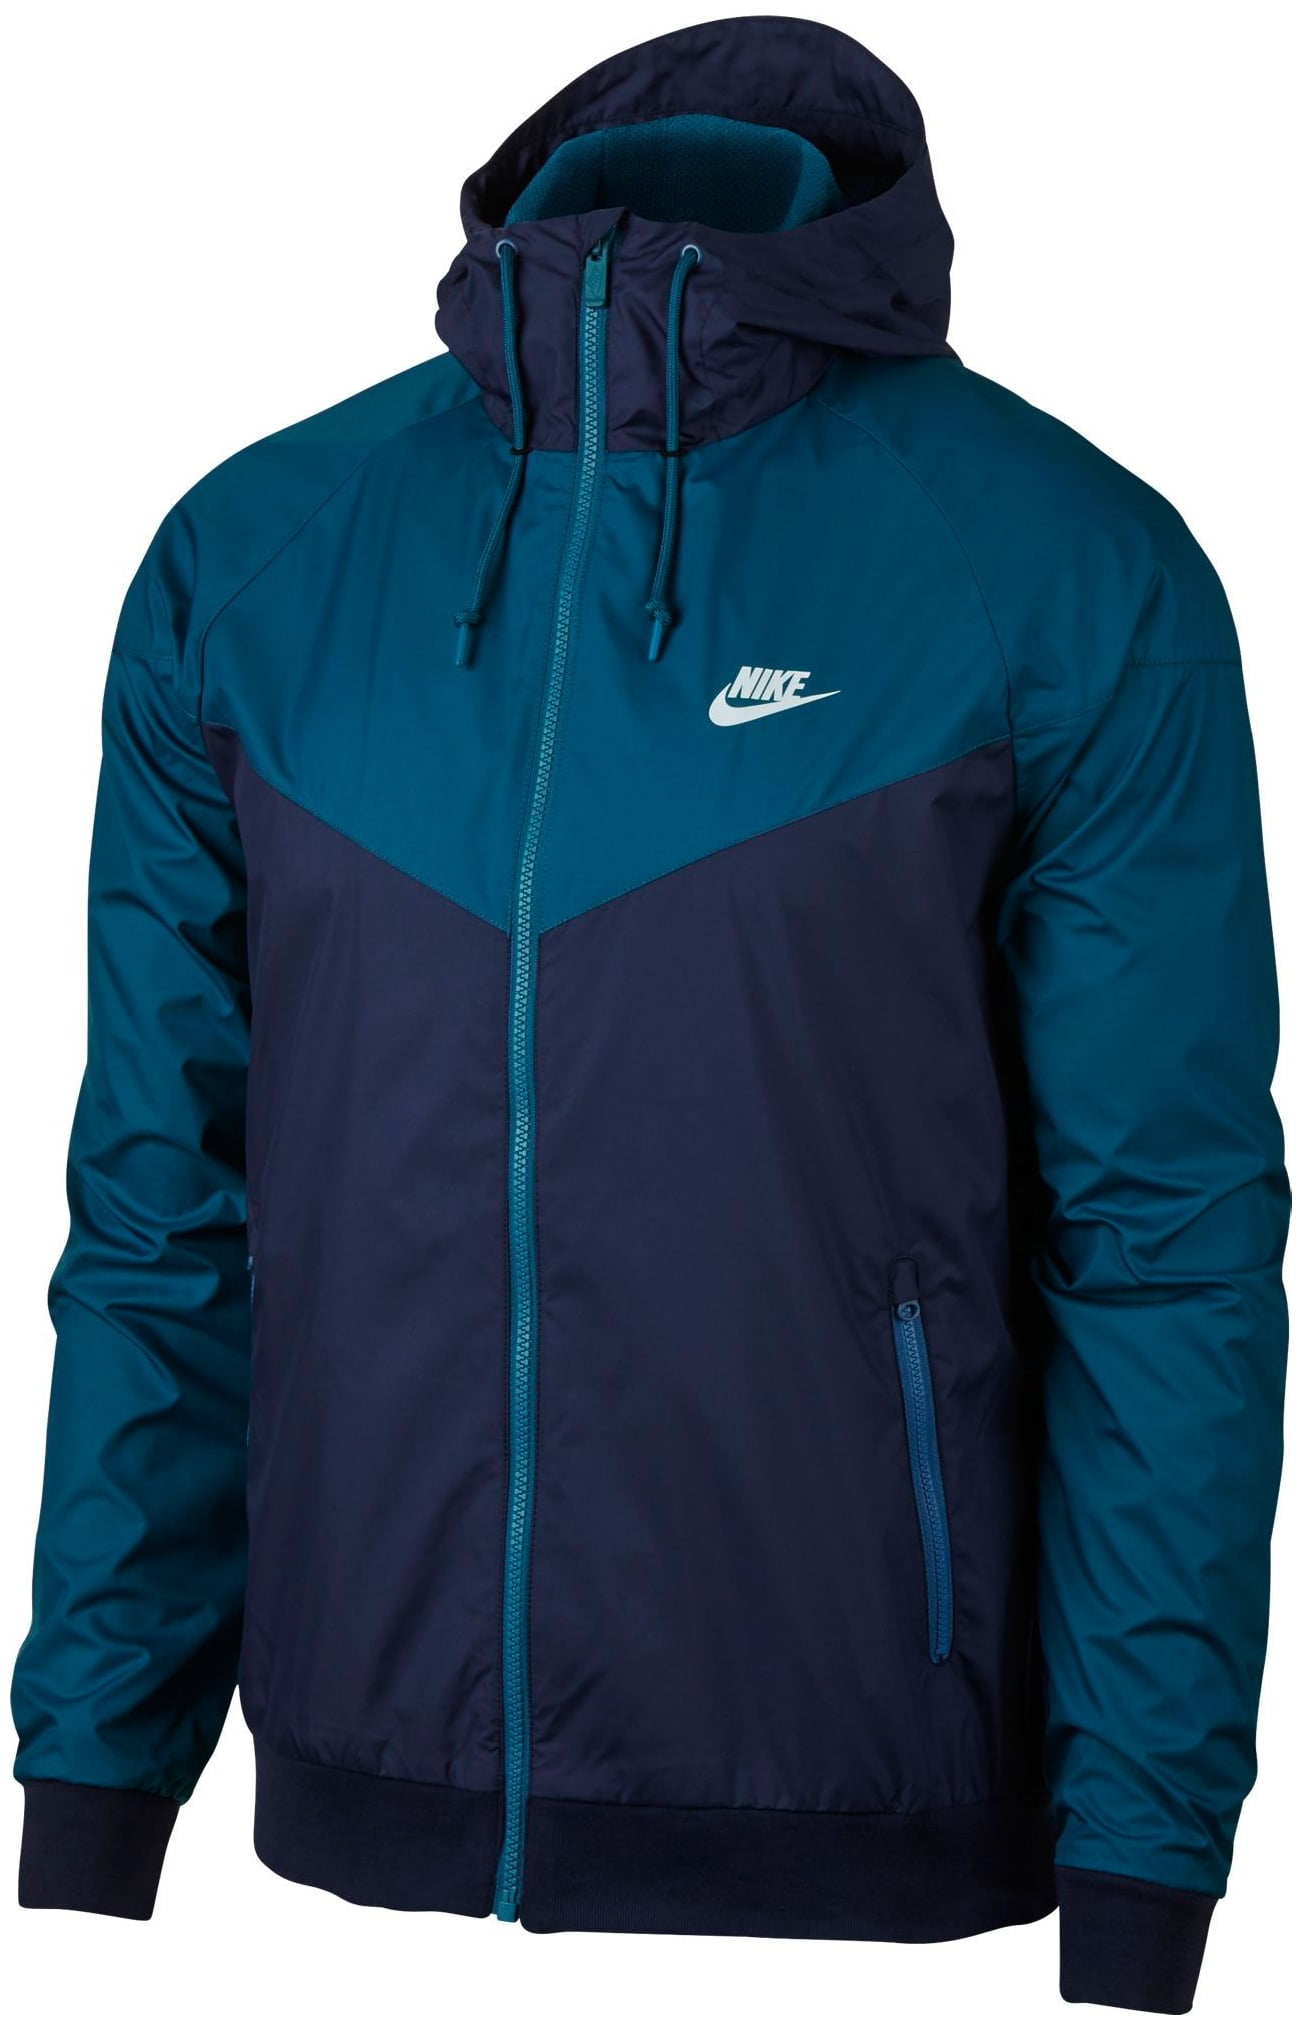 Nike Men's Windrunner Full Zip Running Jacket - Binary Blue/Dust - Size ...